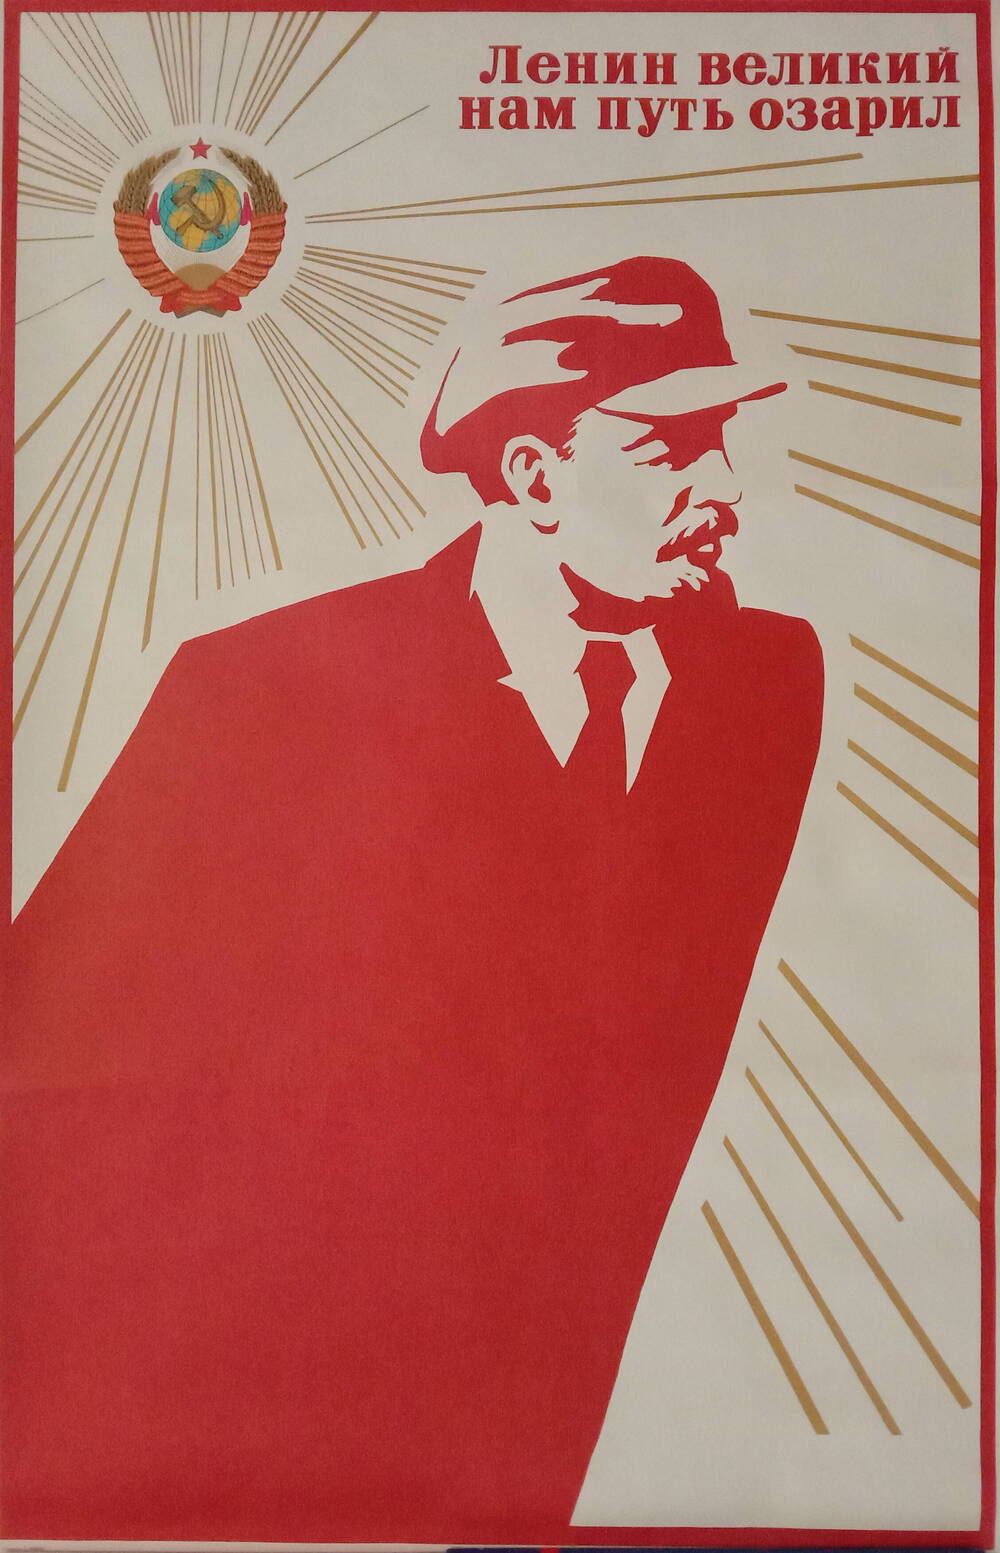 Плакат
«Ленин великий нам путь озарил»